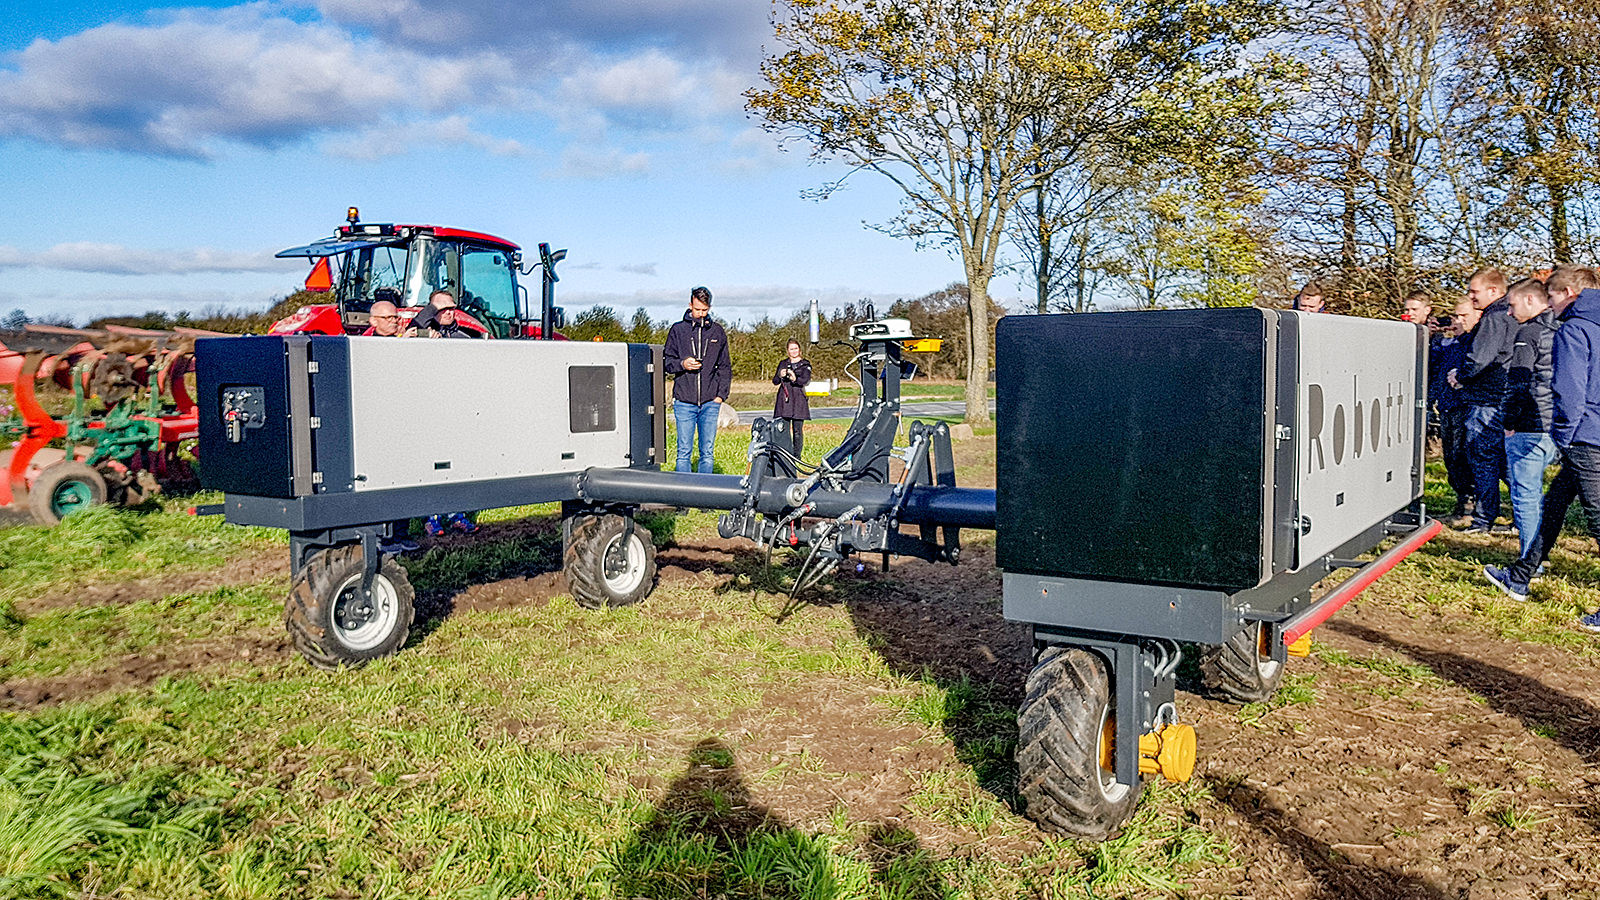 Landbrugselever går rundt om den firhjulede markrobot Robotti, der står på en mark ved siden af en traktor